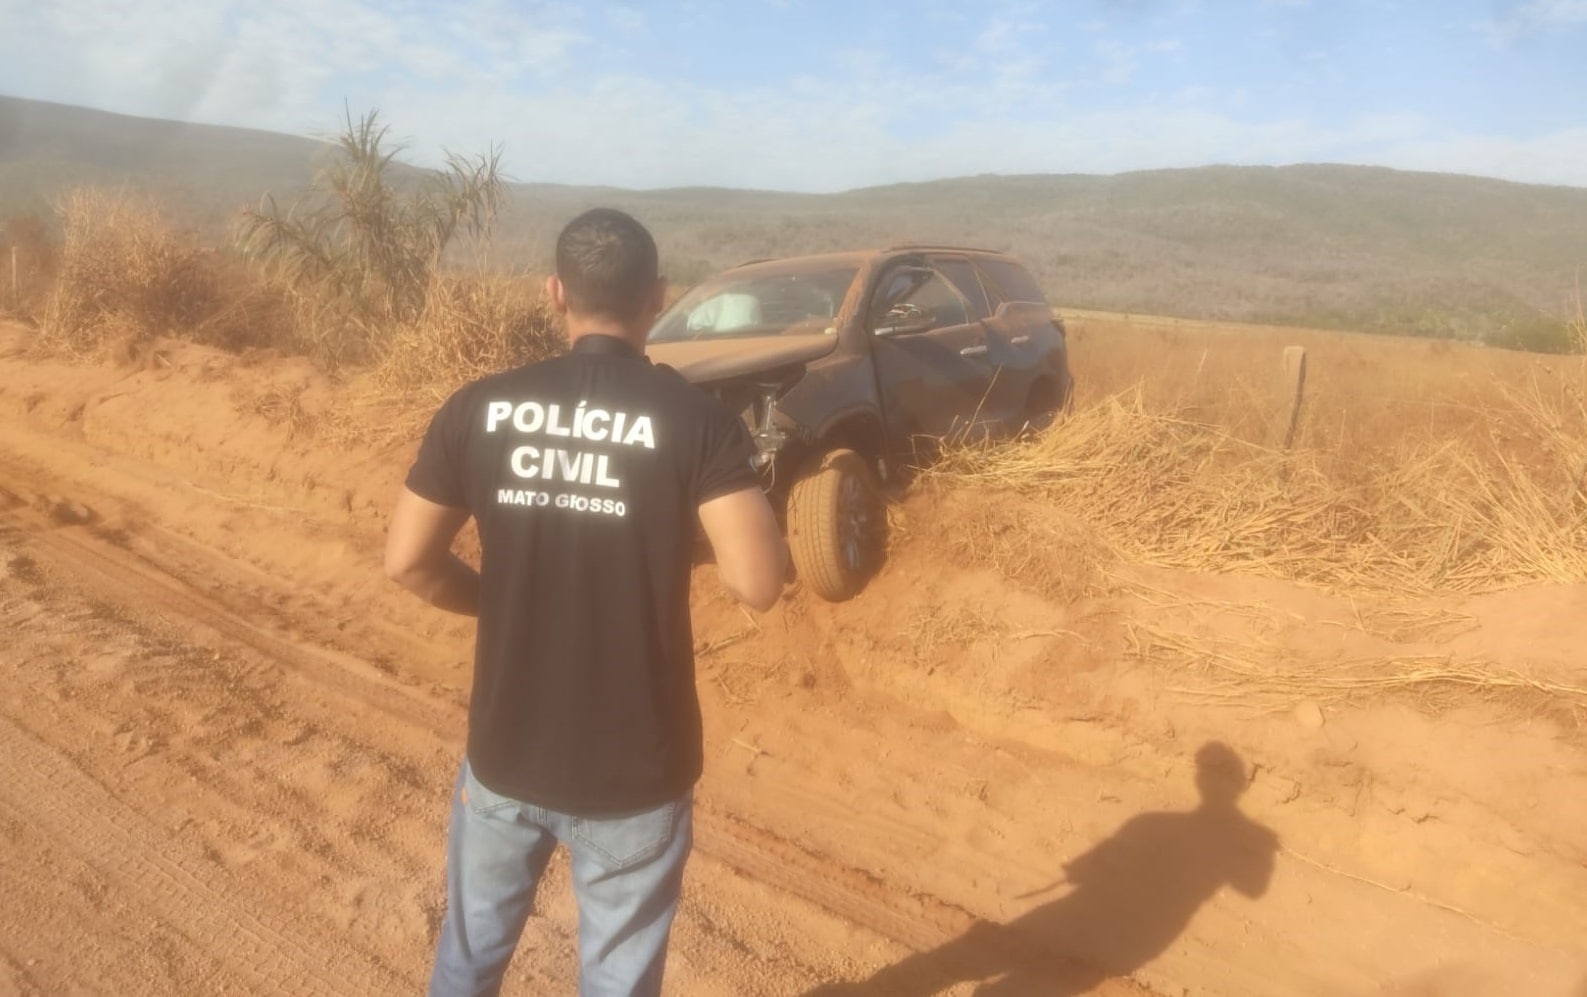 Caminhonete Hilux furtada em Cuiabá é localizada na fronteira de Mato Grosso